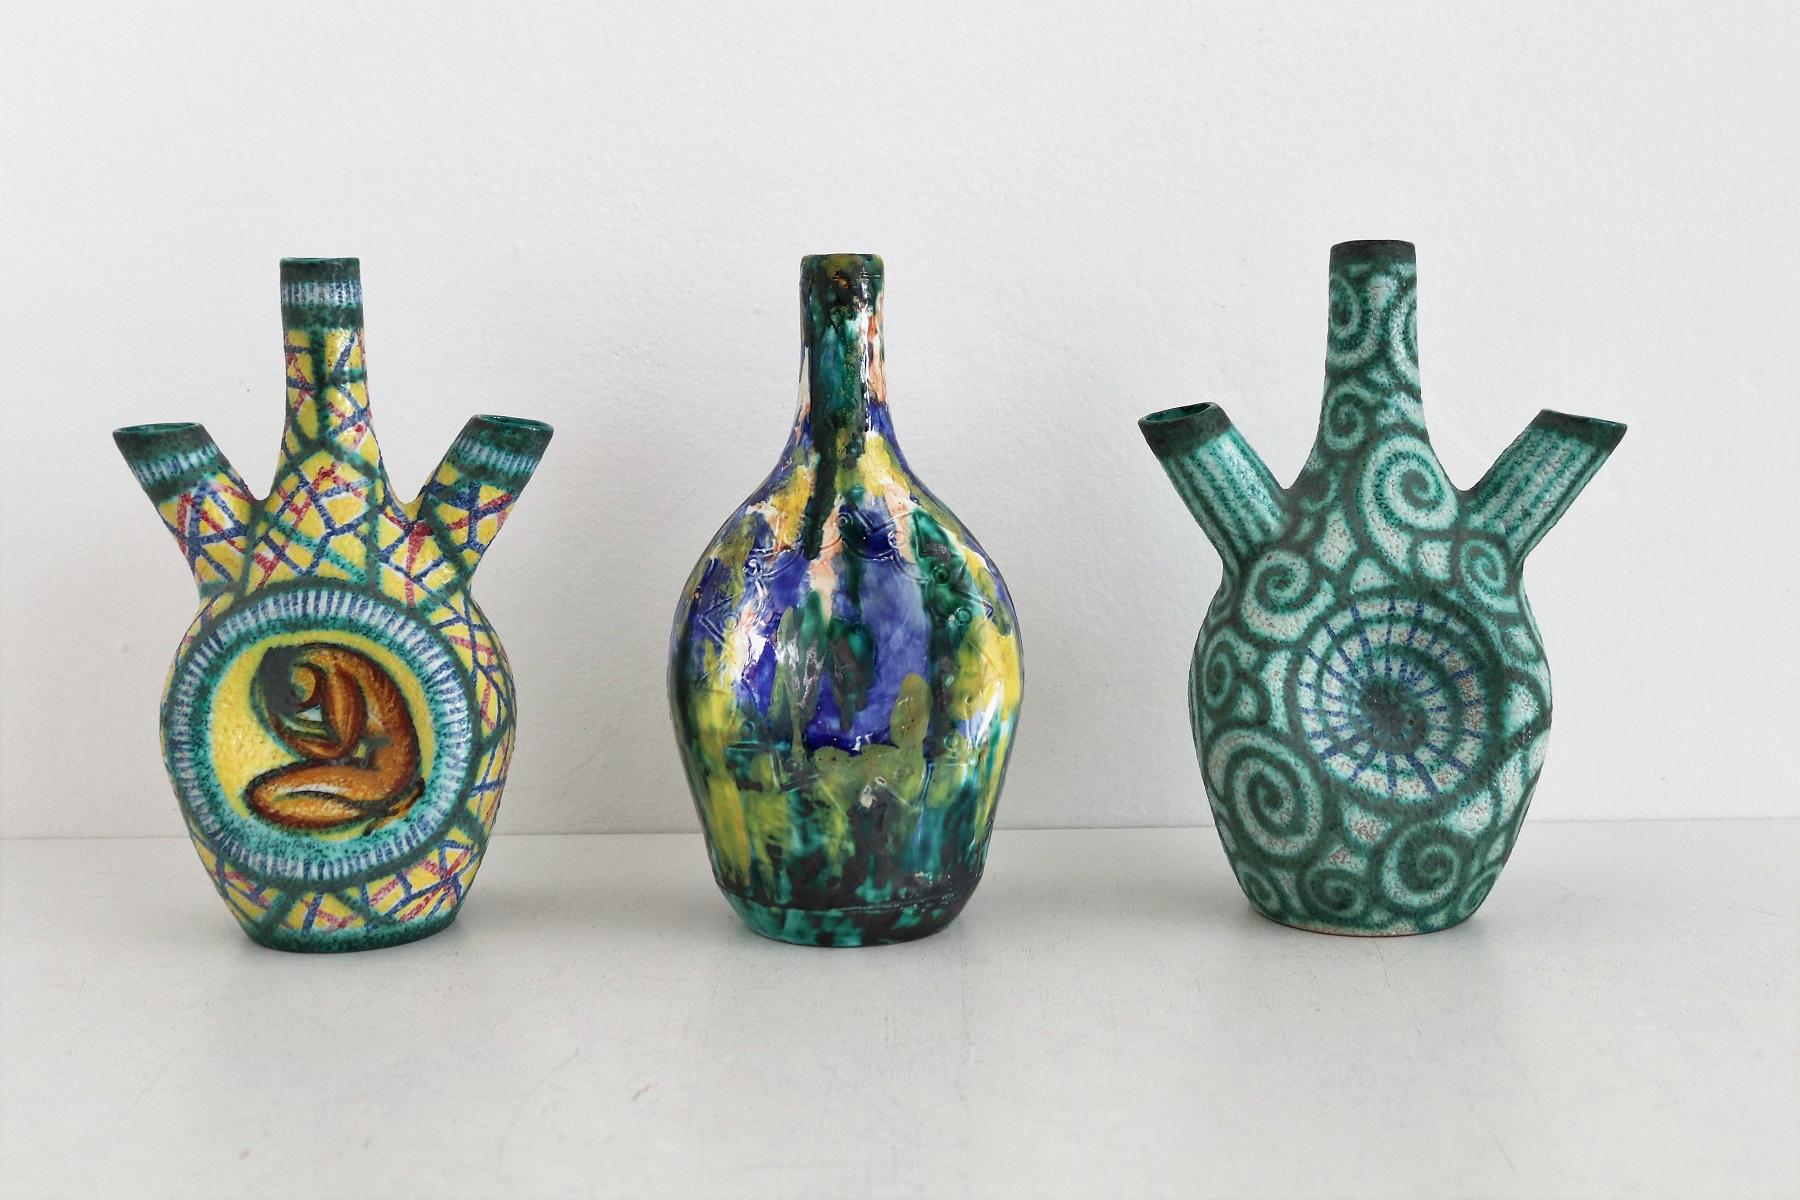 Giuseppe Barile Albisola Italian Midcentury Modern Pottery Vase, 1950s For Sale 2